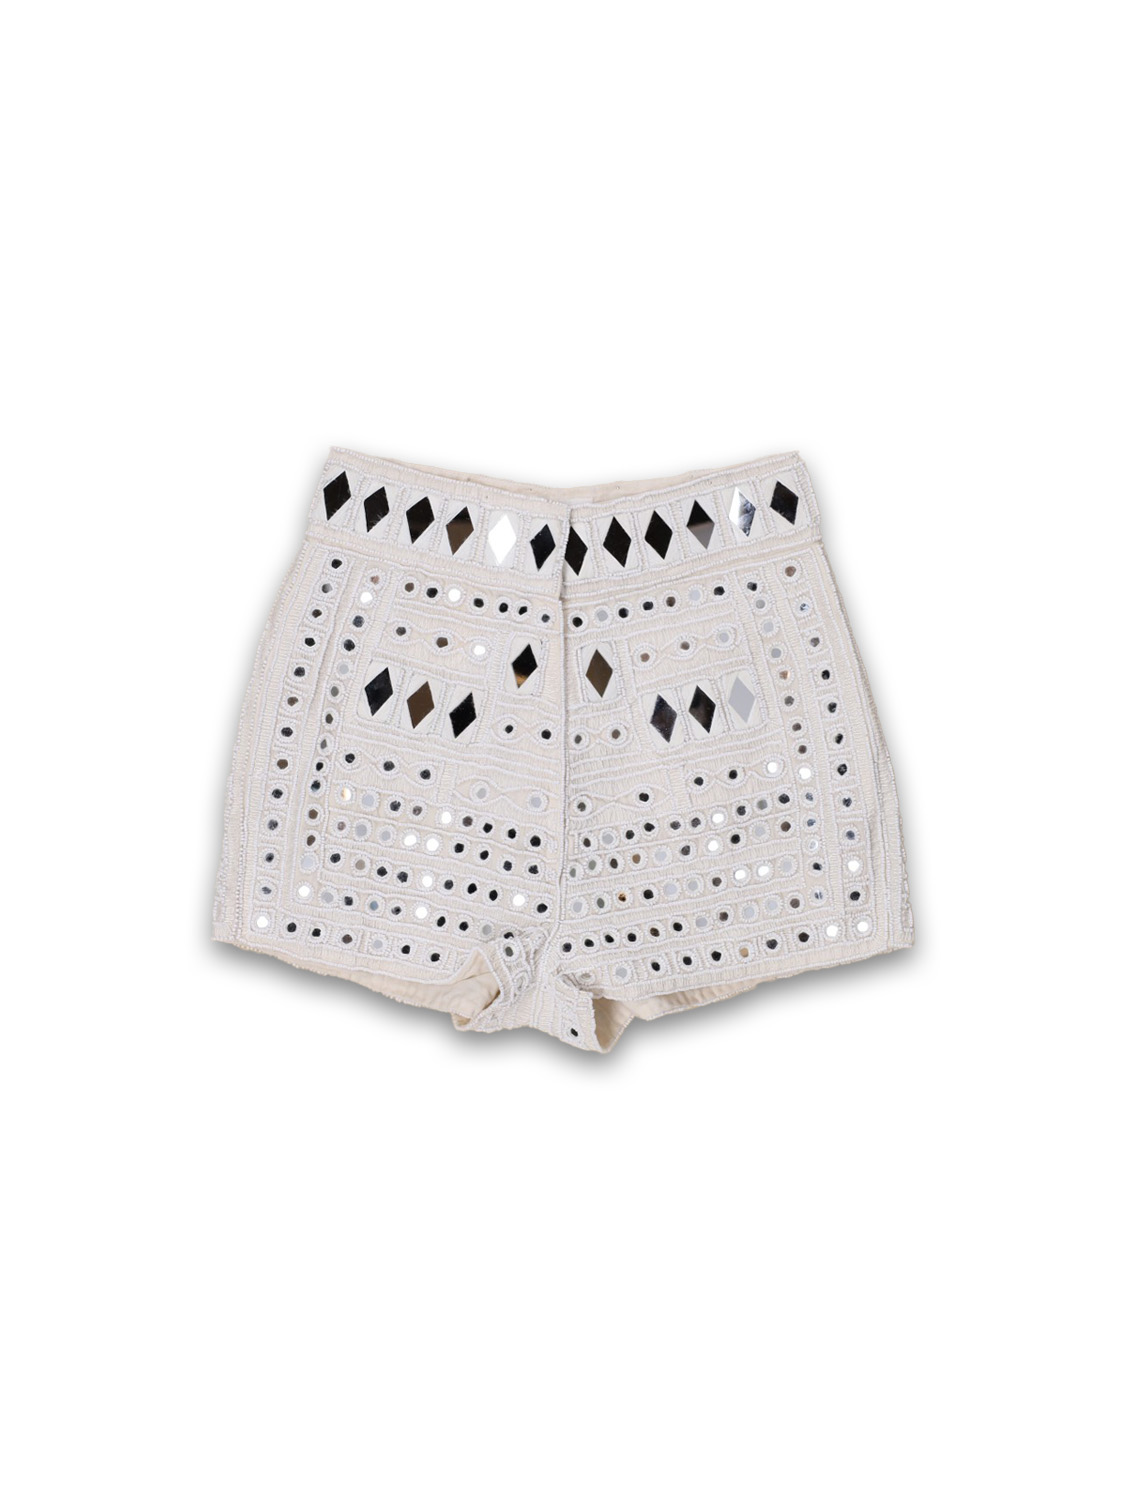 Antik Batik Mahani – Shorts mit Spiegel-Details   creme 36